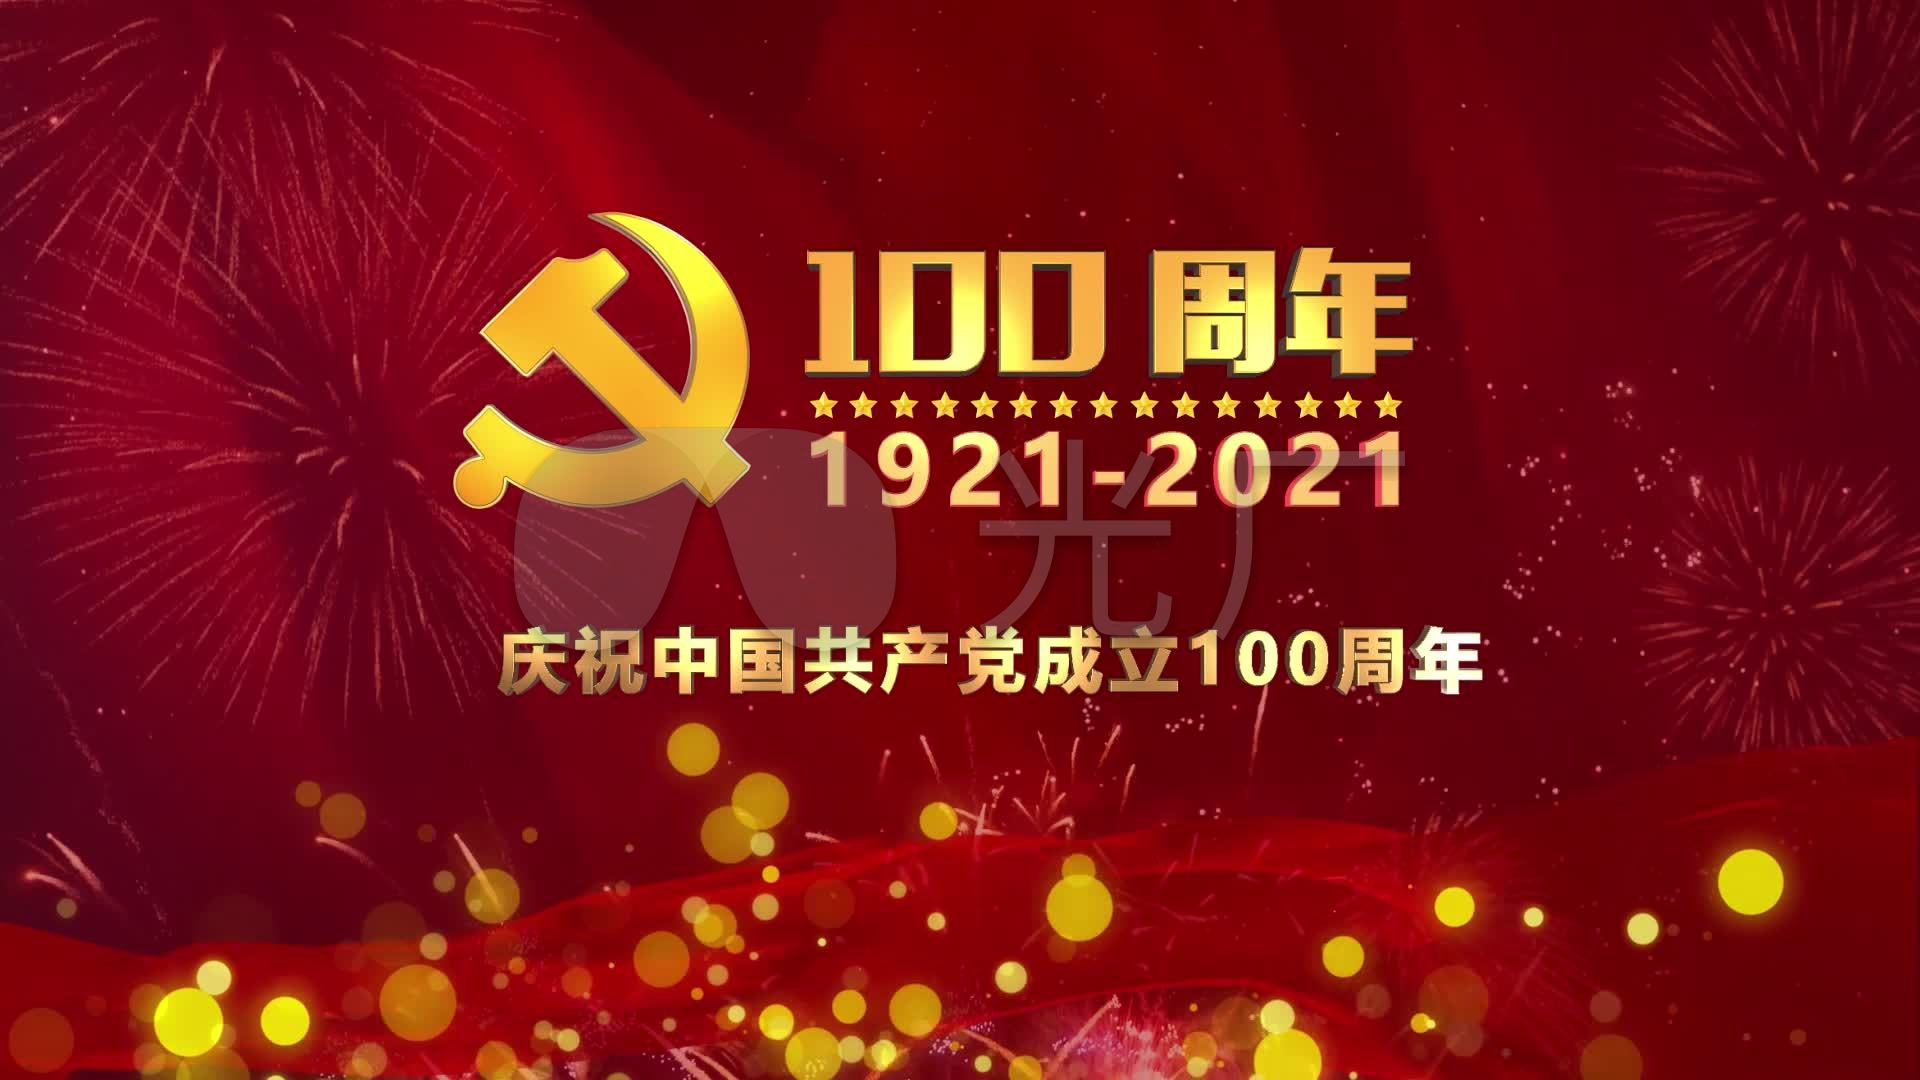 中国共产党成立100周年(红色背景)_1920x1080_高清(:)